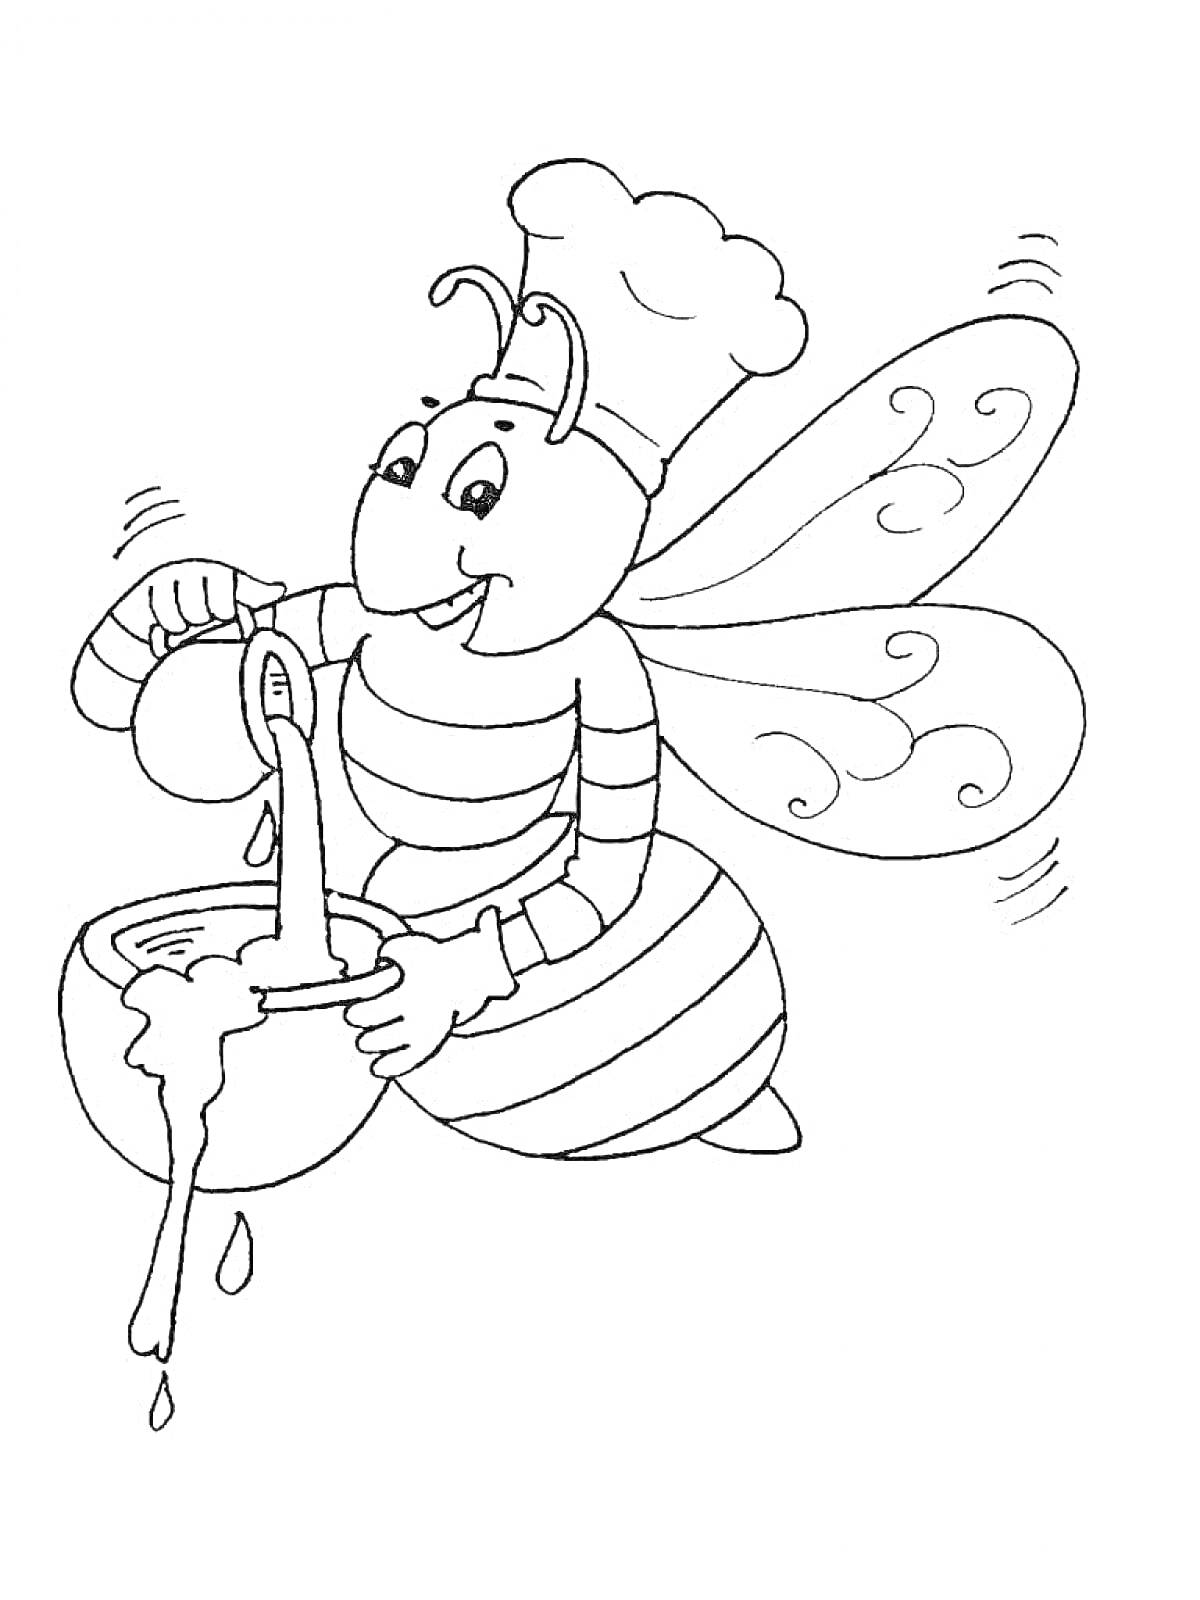 Пчела-повар смешивает ингредиенты в миске